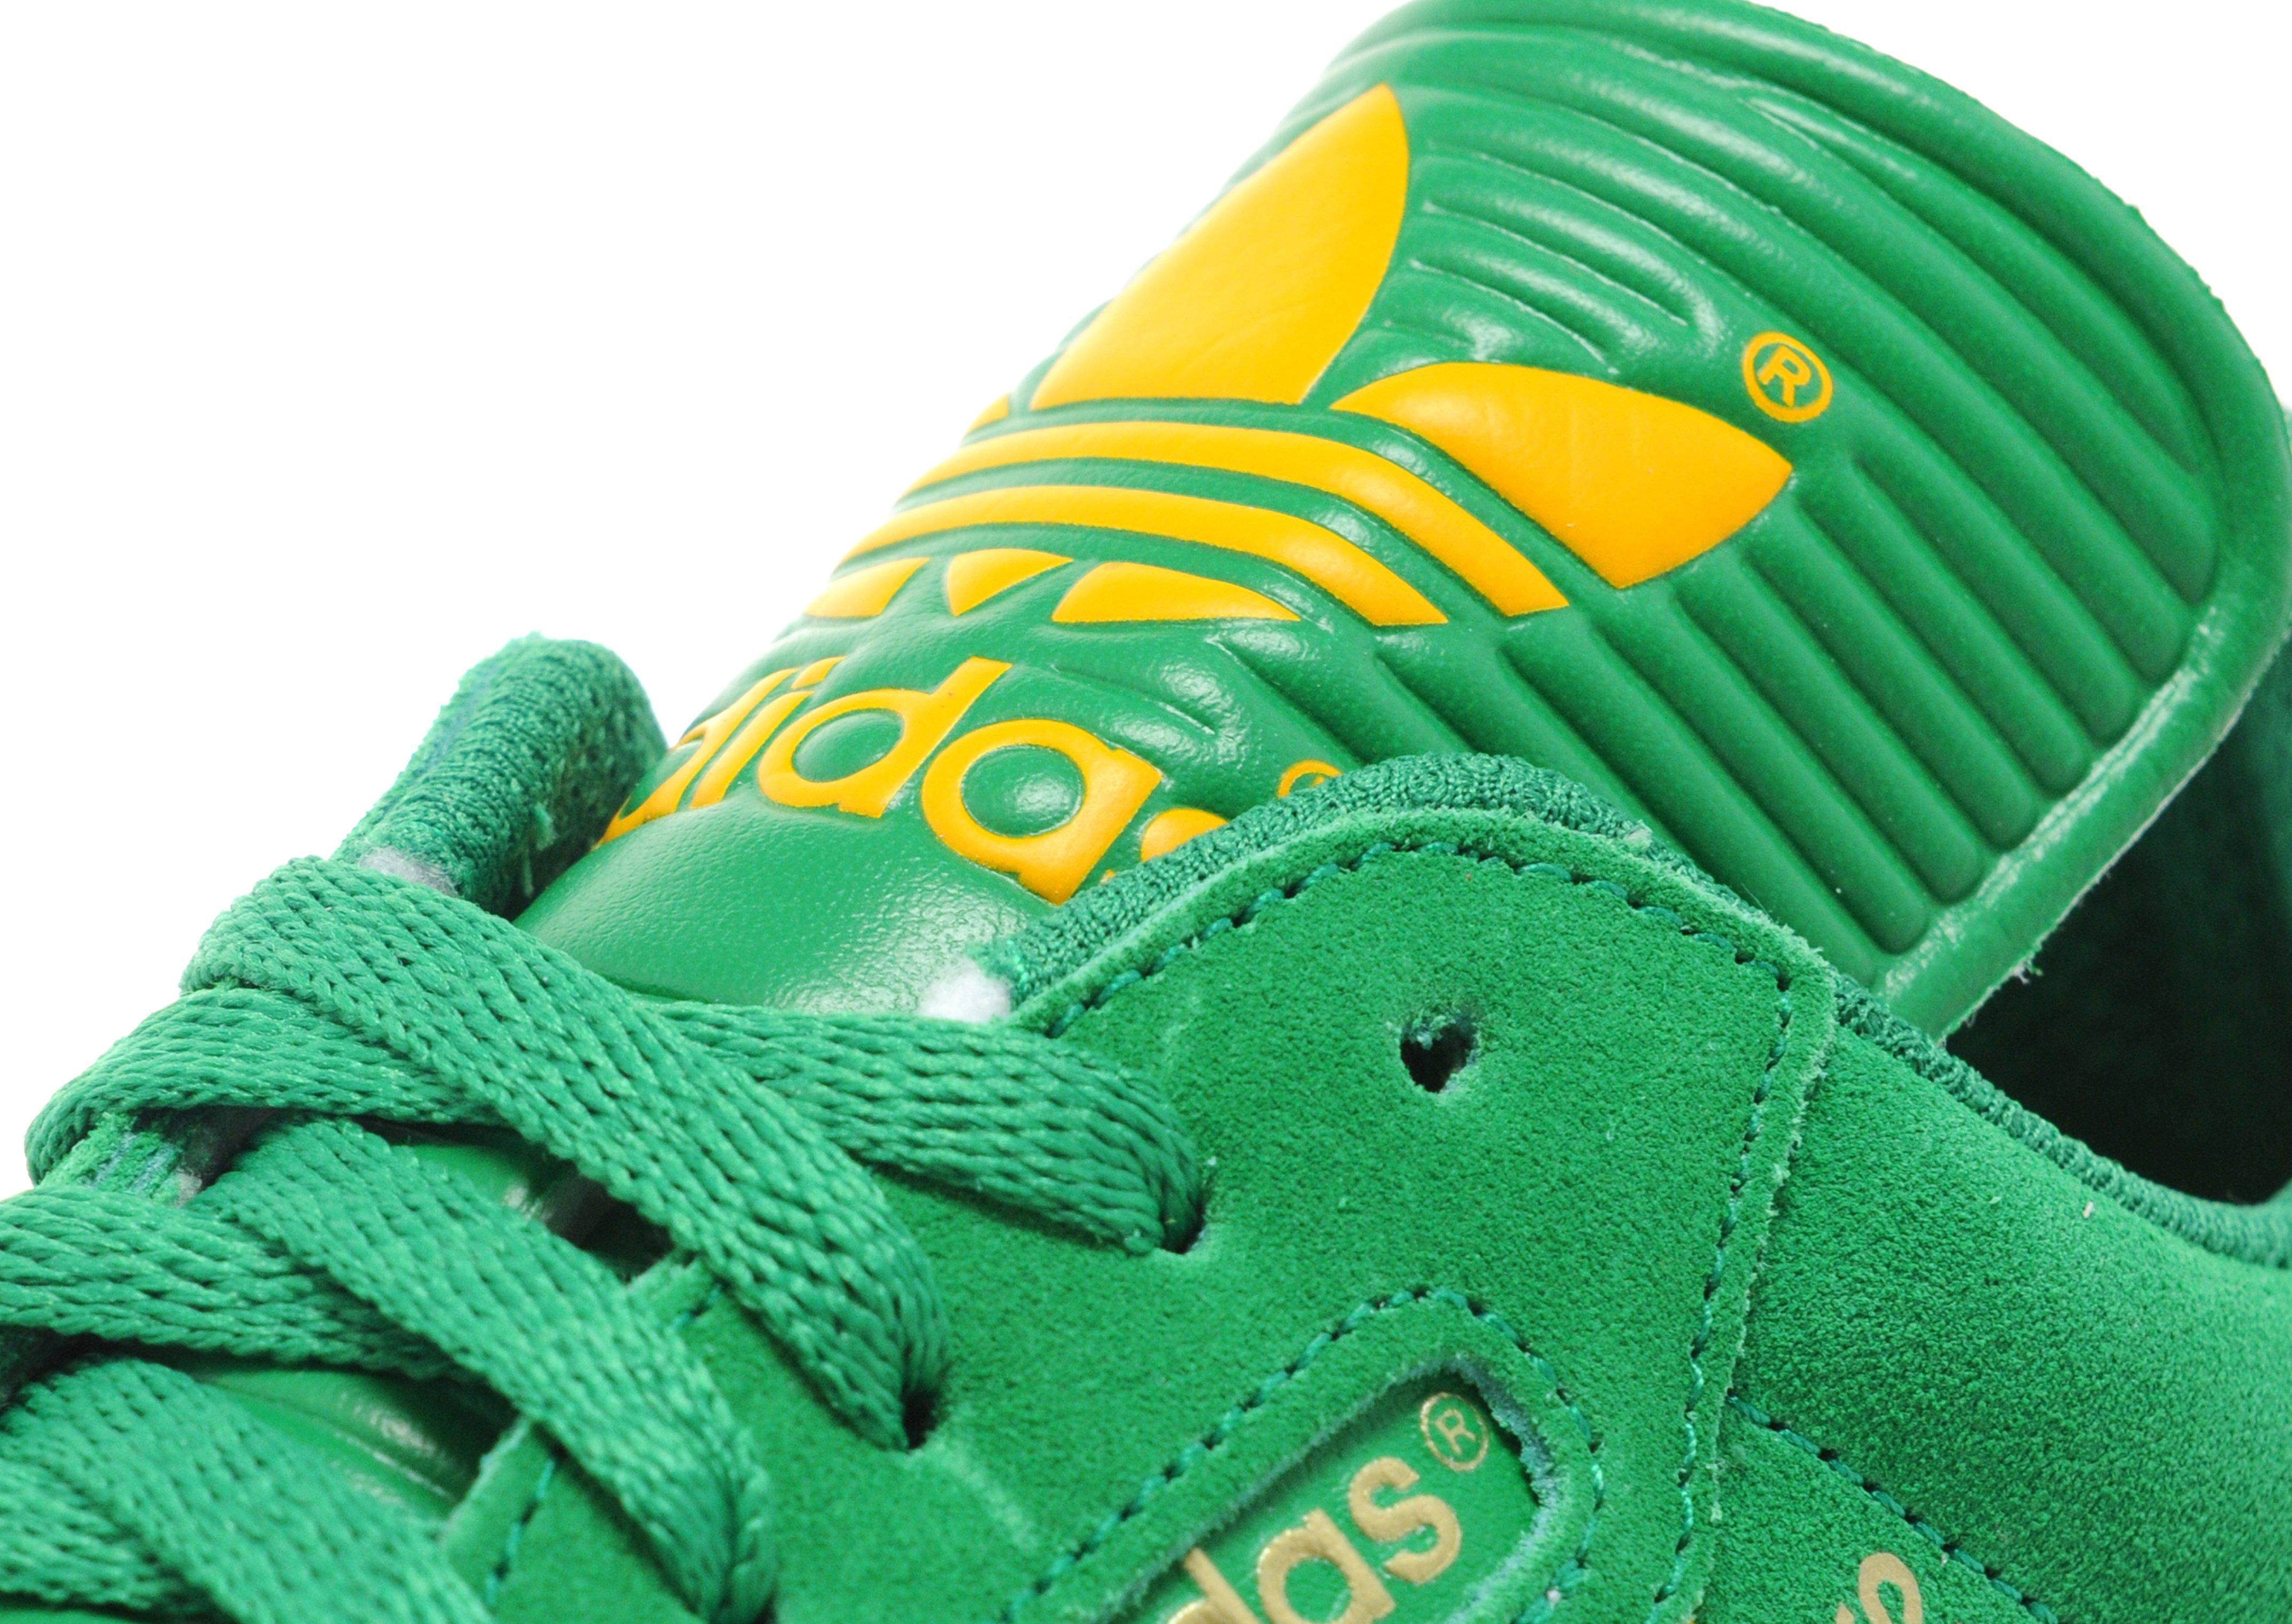 adidas samba green and gold